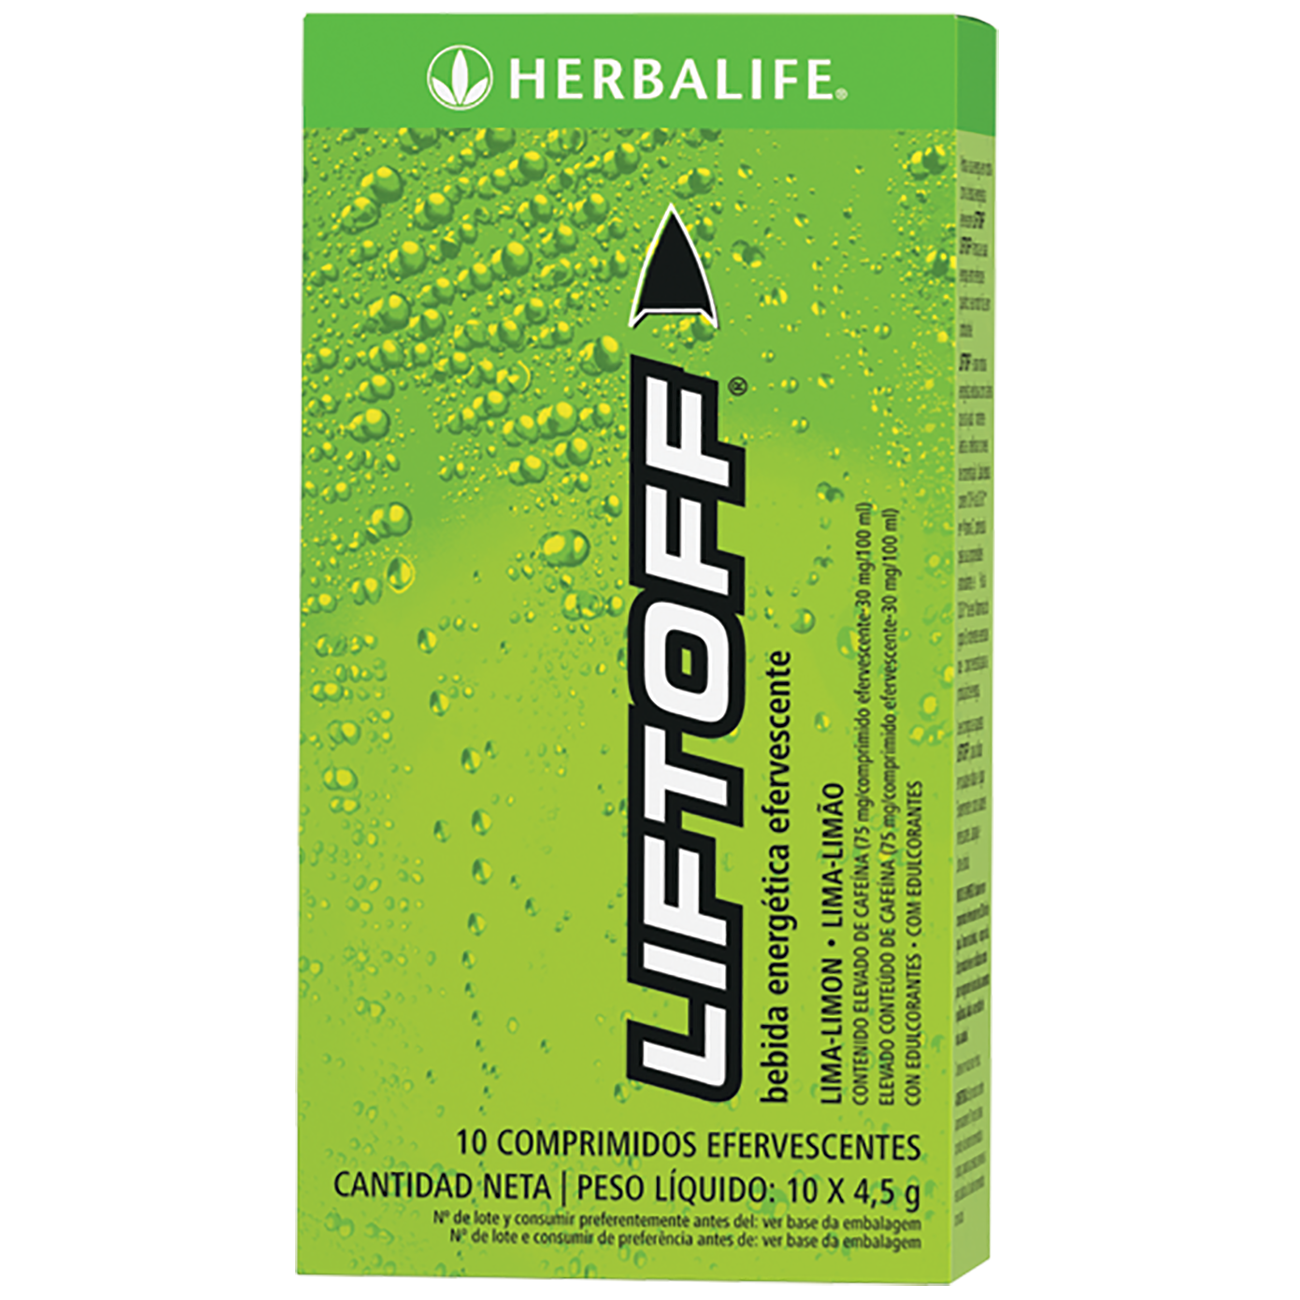 LiftOff® Bebida Energética Lima-Limão product shot